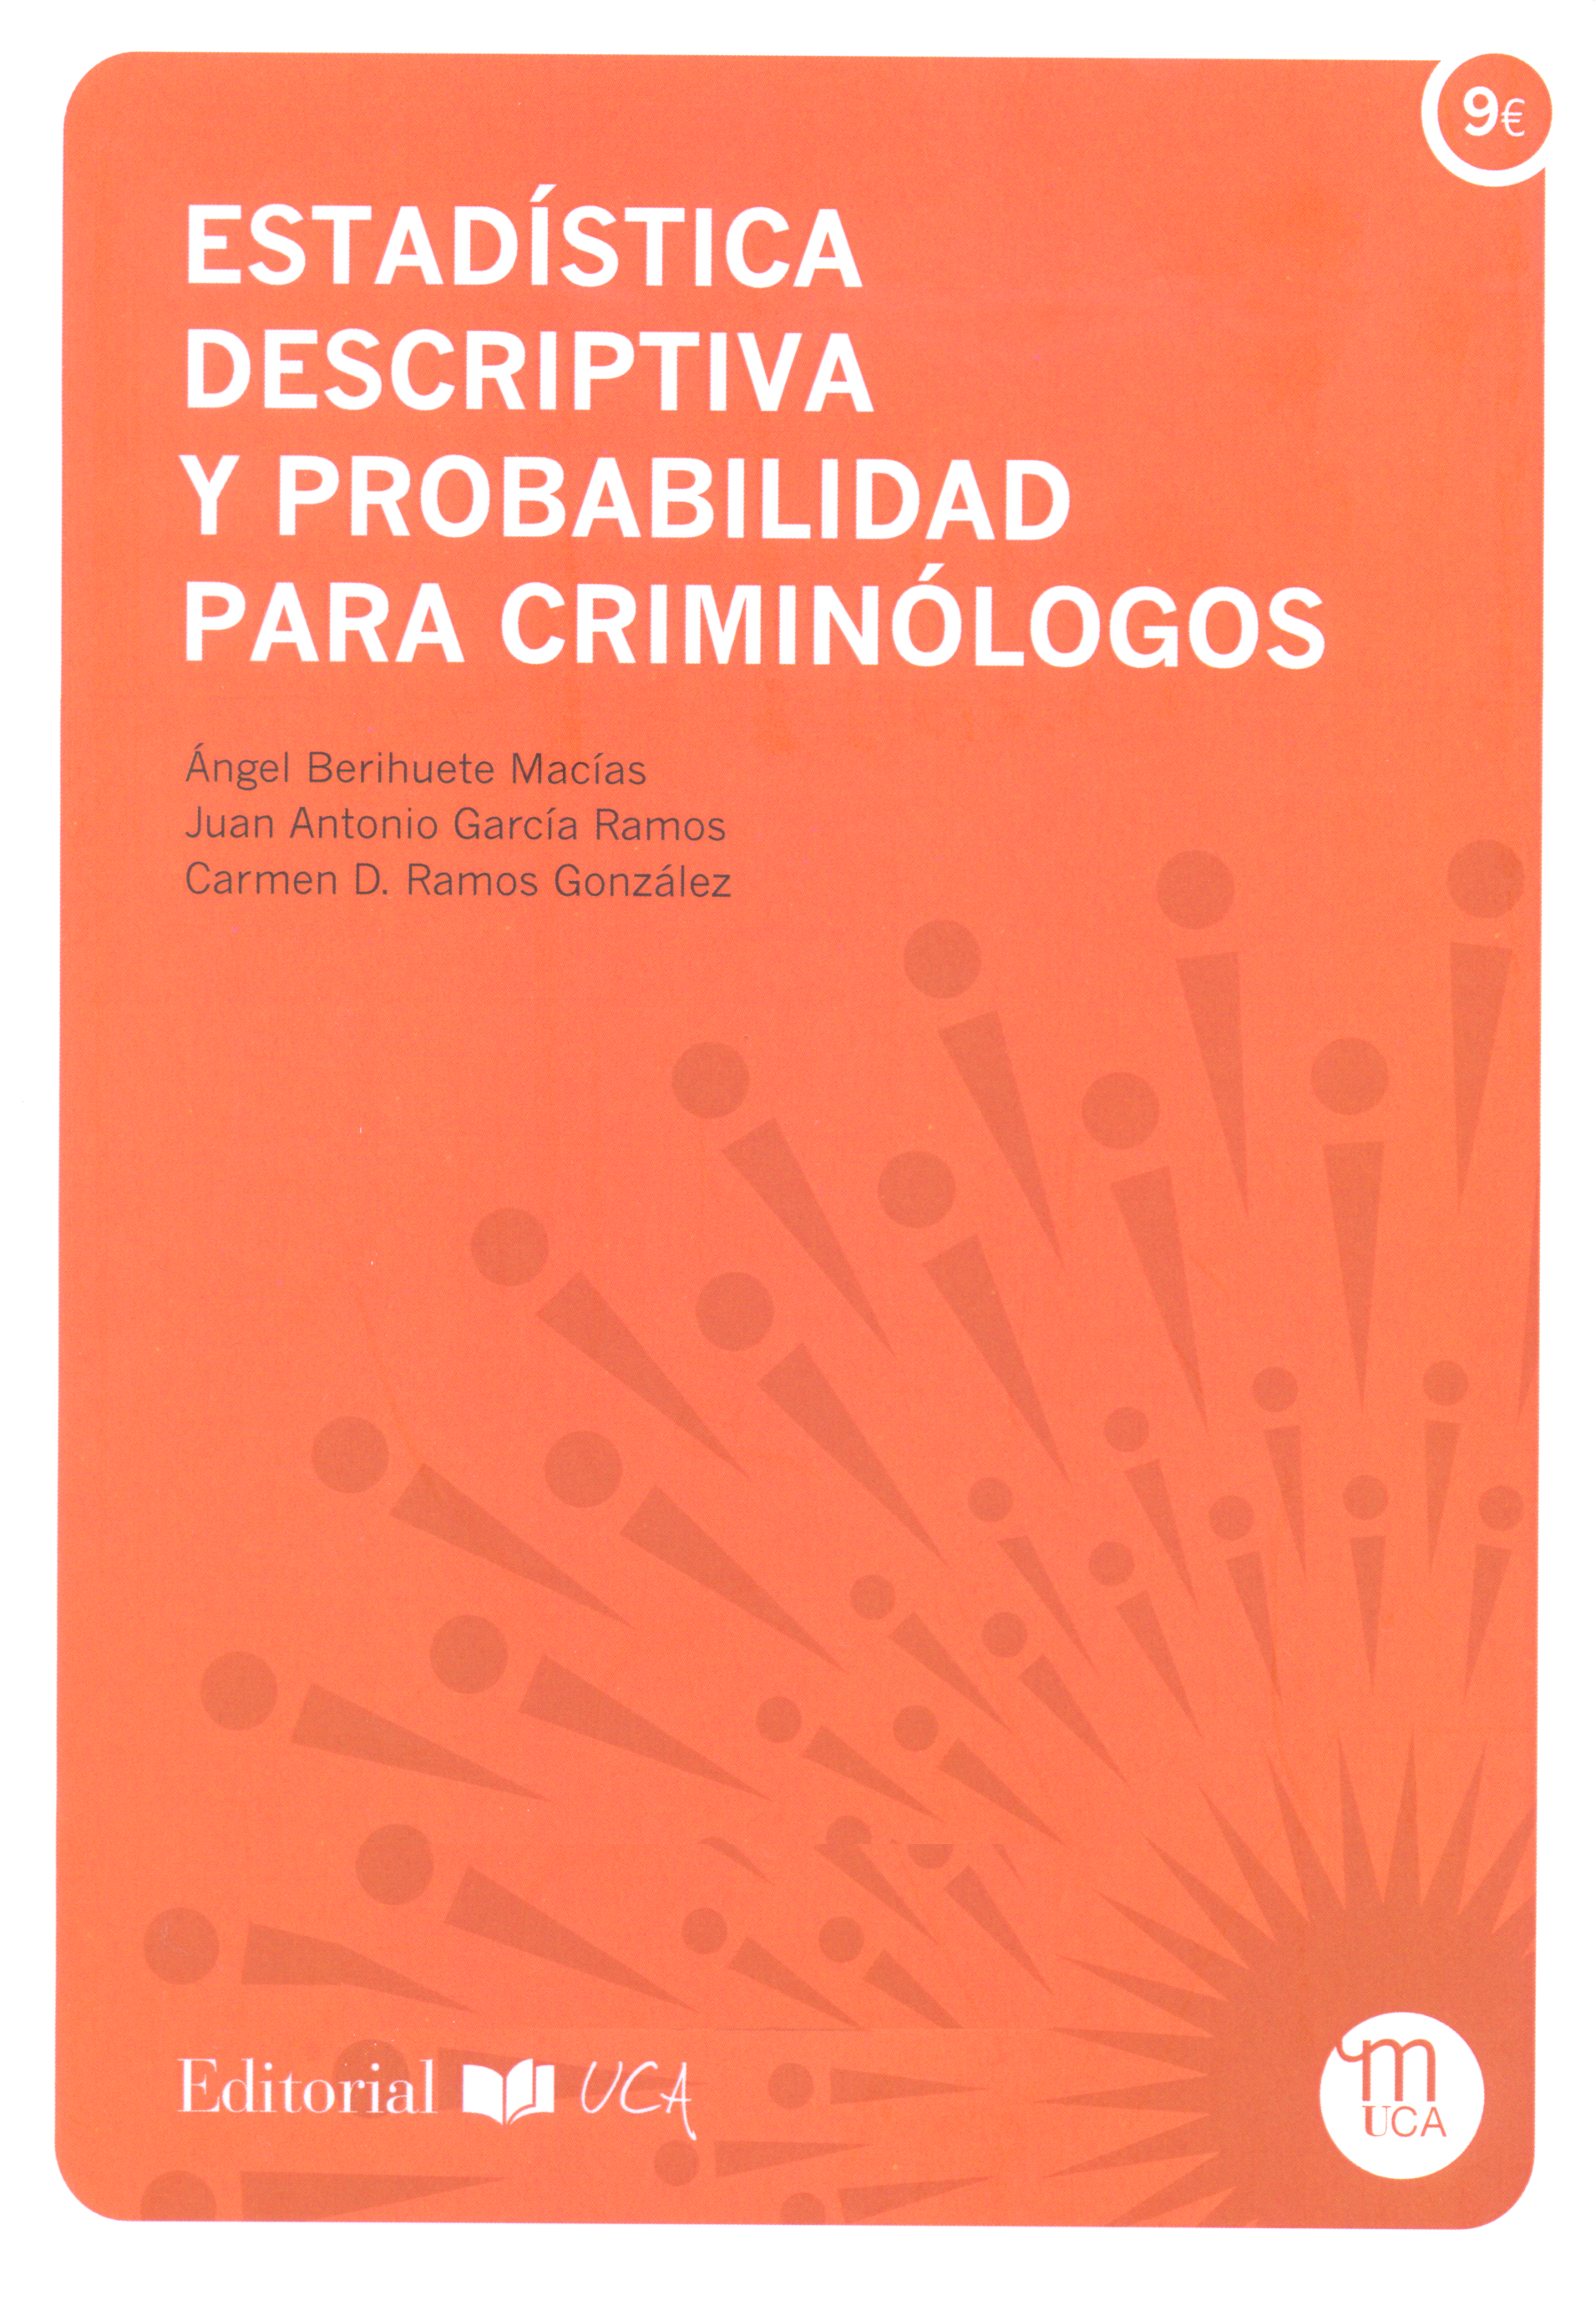 Estadística descriptiva y probabilidad para criminólogos / Ángel Berihuete Macías, Juan Antonio García Ramos, Carmen D. Ramos González